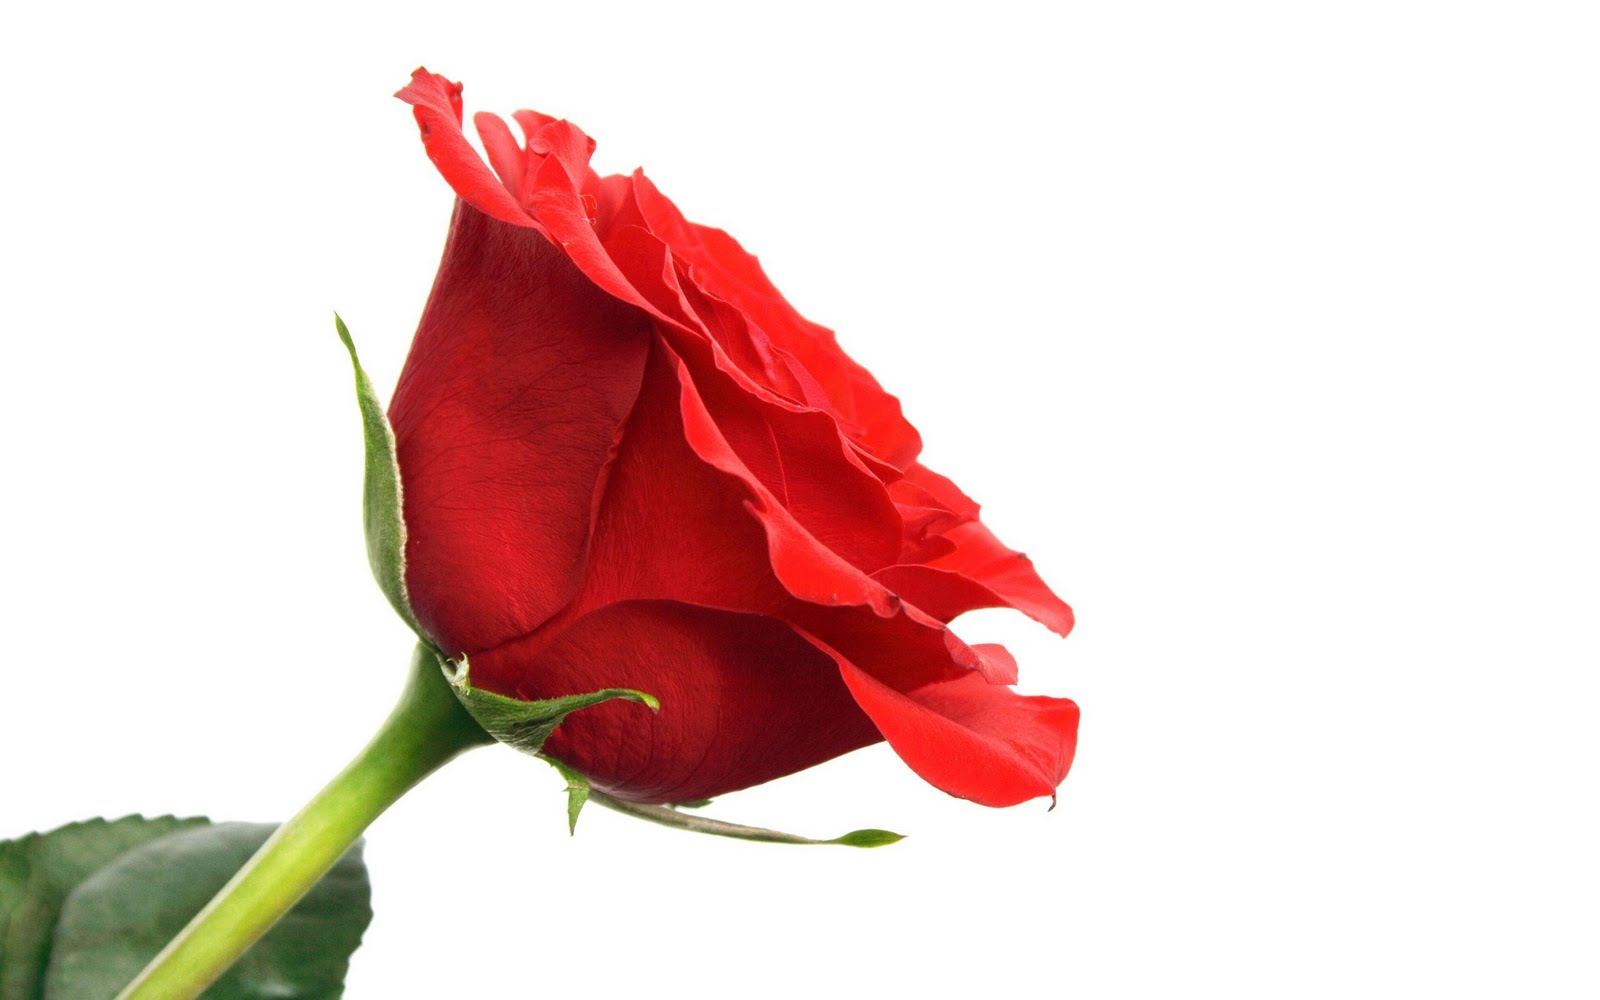 http://4.bp.blogspot.com/_T61BkxQ8qyk/TVUlTKnMO8I/AAAAAAAACXE/wW5Gkbf-5lA/s1600/Roses_Lovers_Wallpapers_happy_Valentine_day_Wallpapers_29_01.jpg